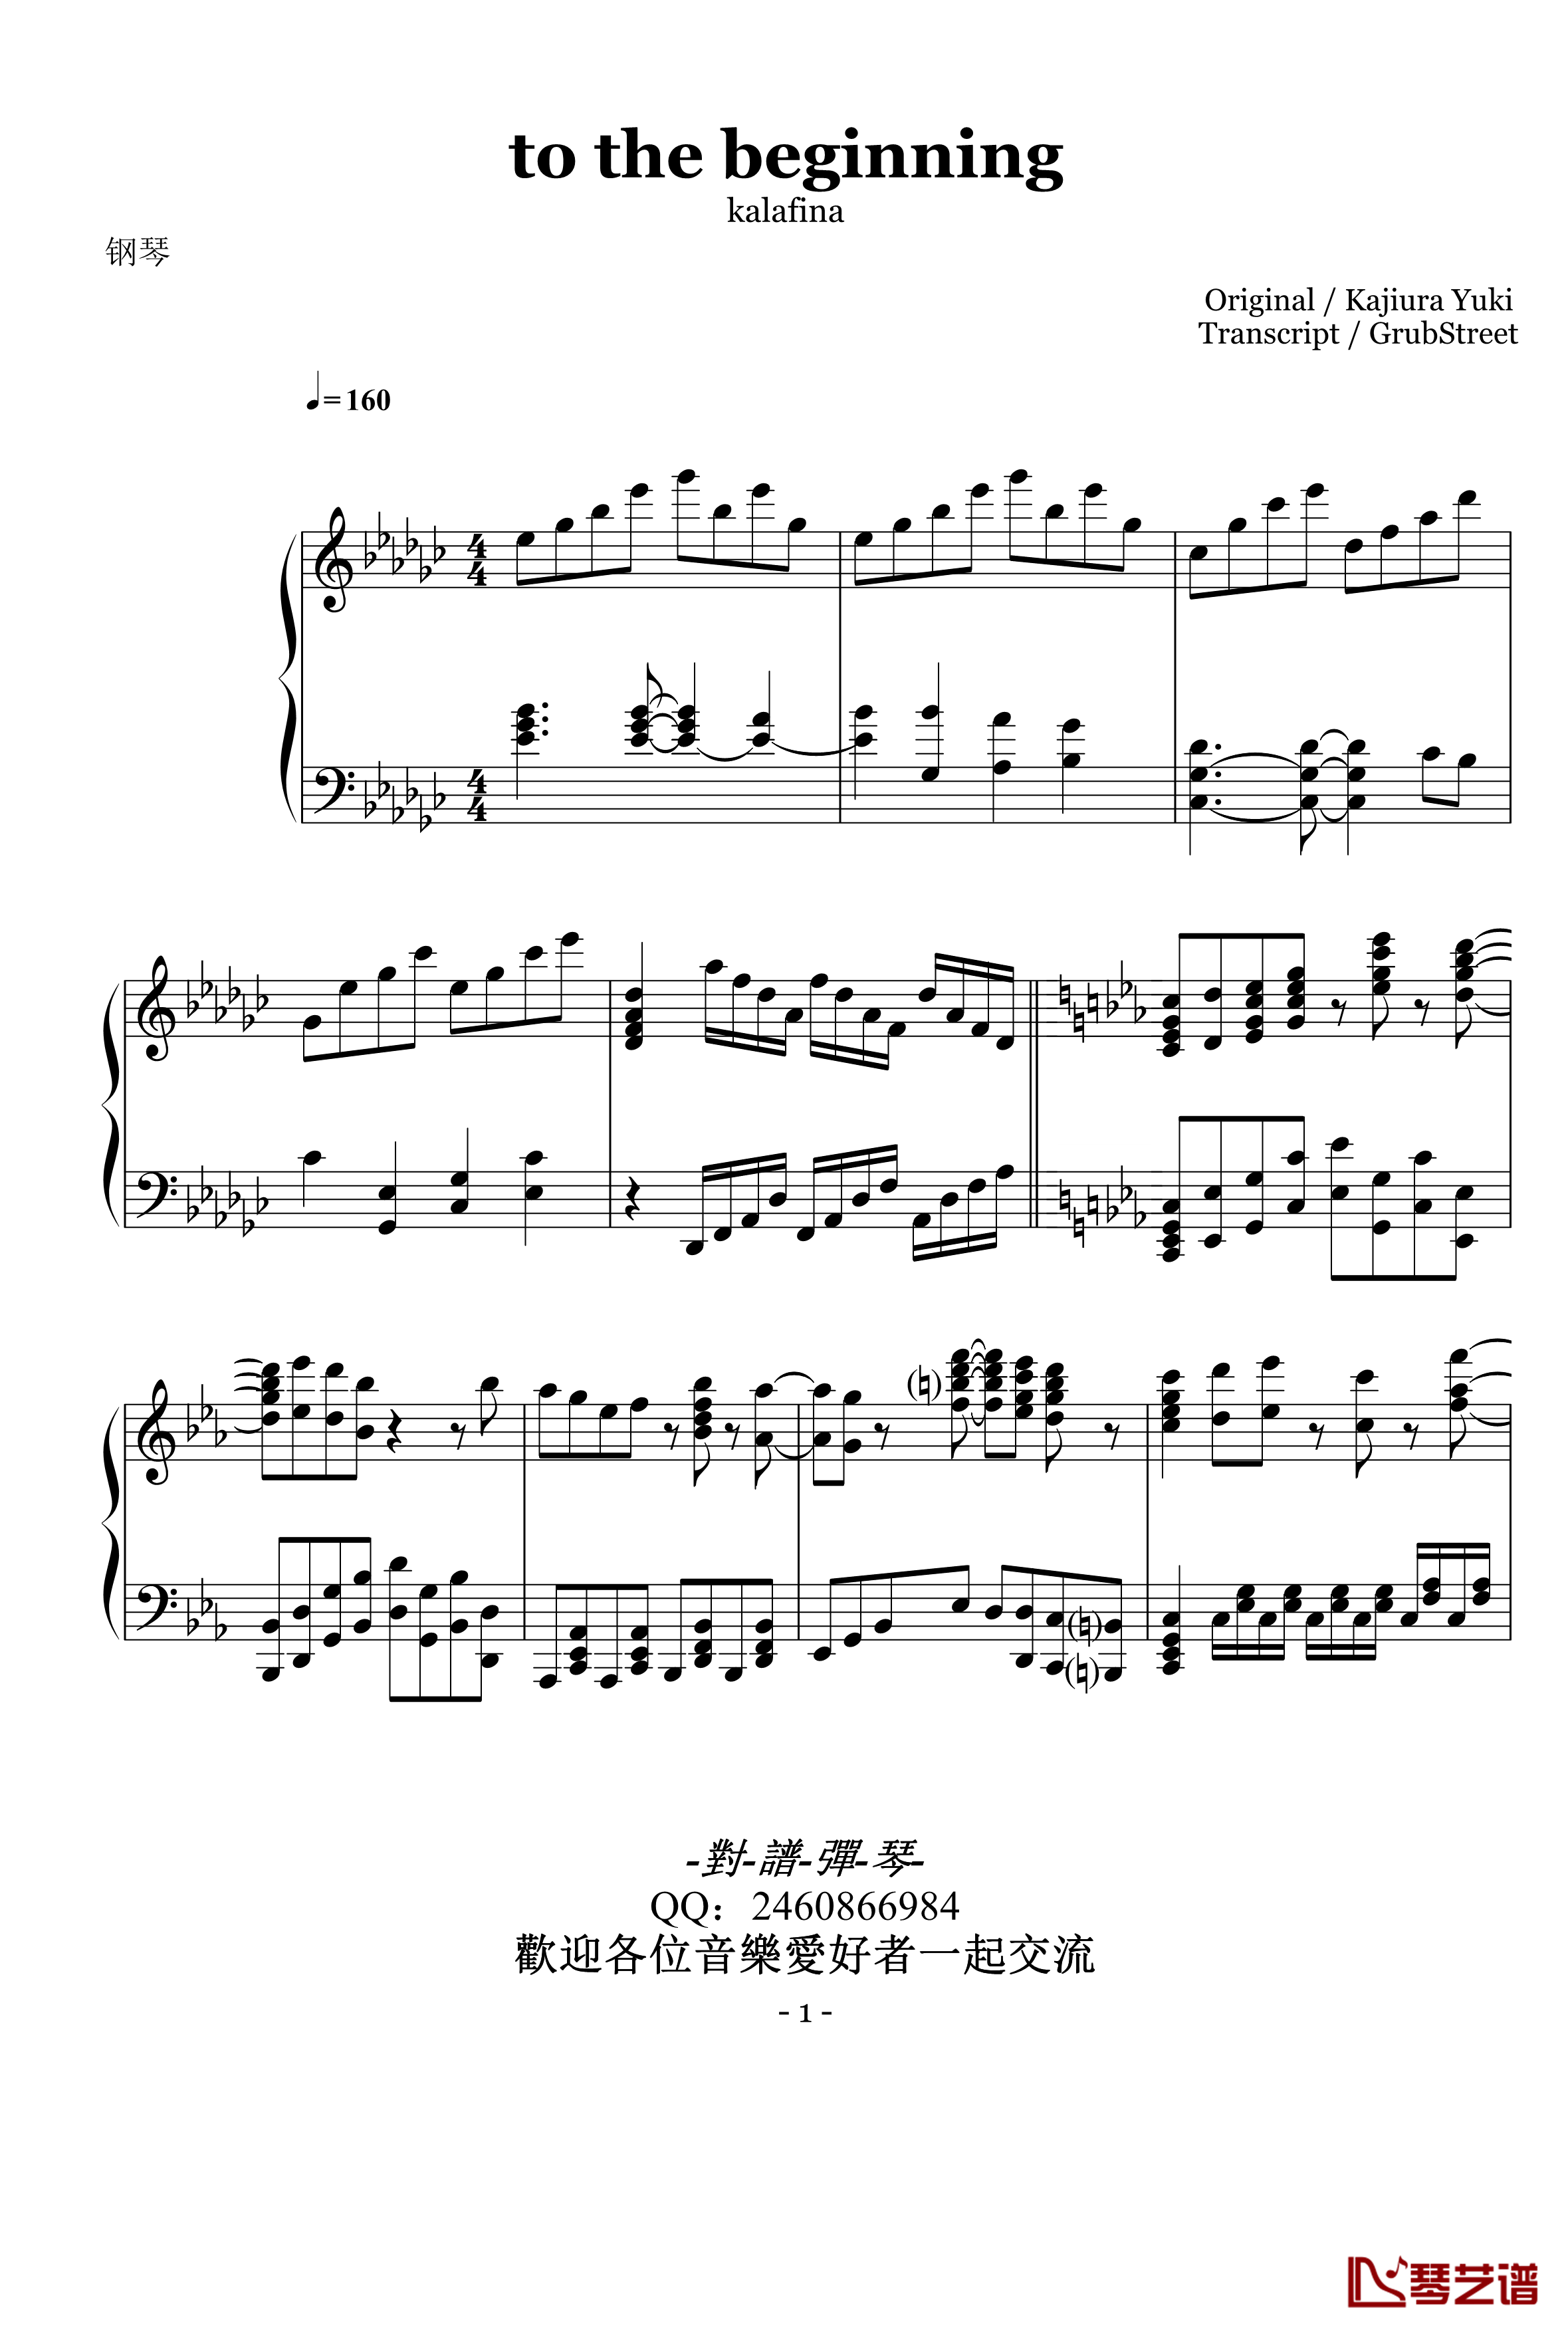 to the beginning钢琴谱-钢琴版 -對譜彈琴-尾浦游纪